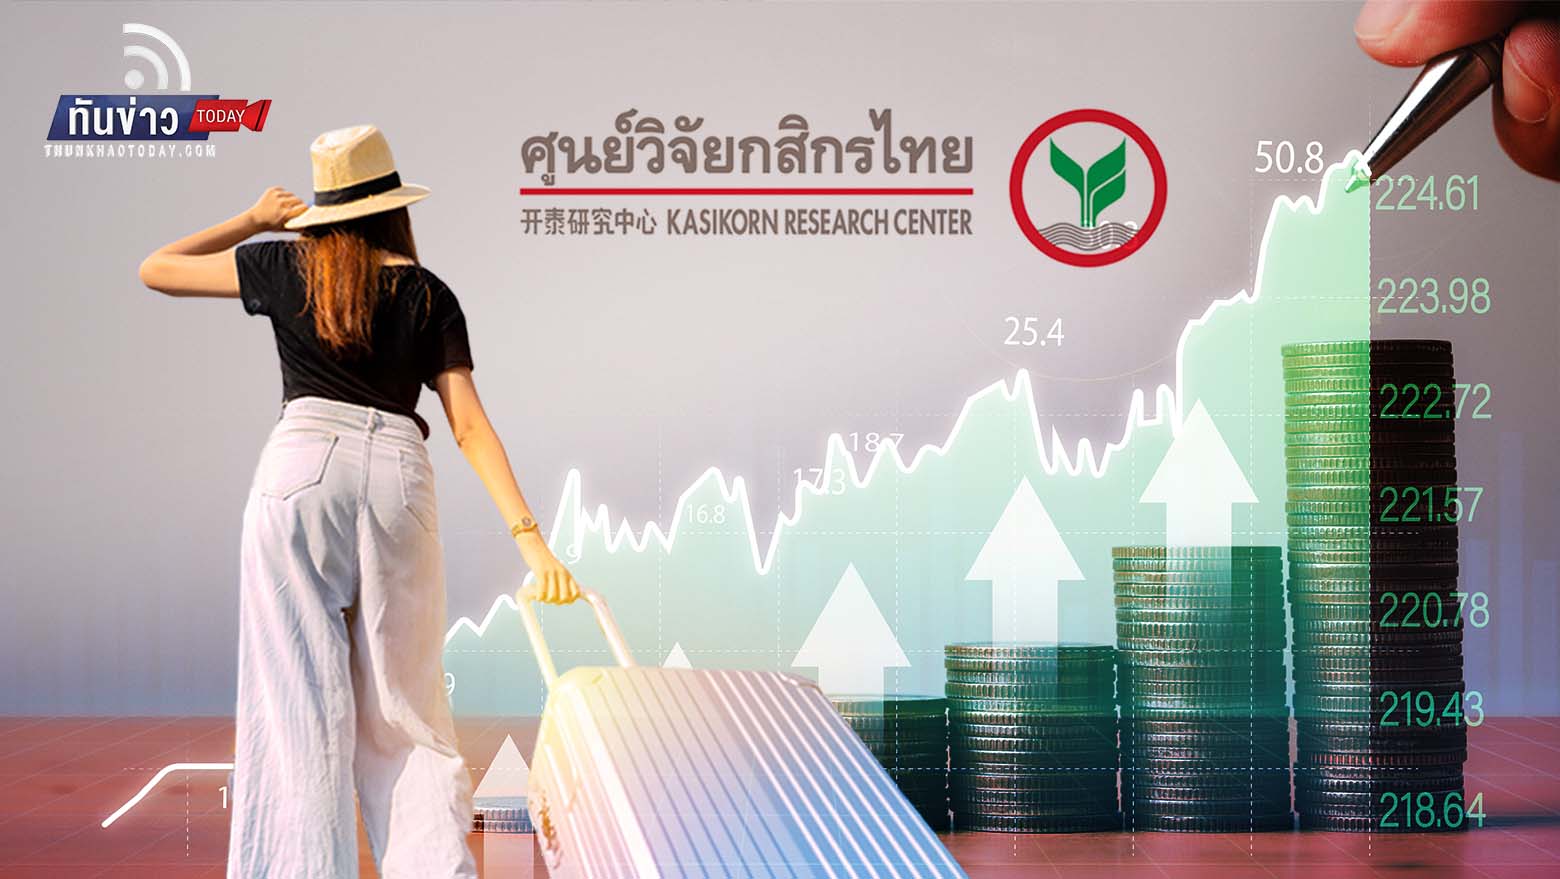 ศูนย์วิจัยกสิกรไทย คาดท่องเที่ยวปีใหม่หนุนเงินสะพัด 3 หมื่นล้านบาท